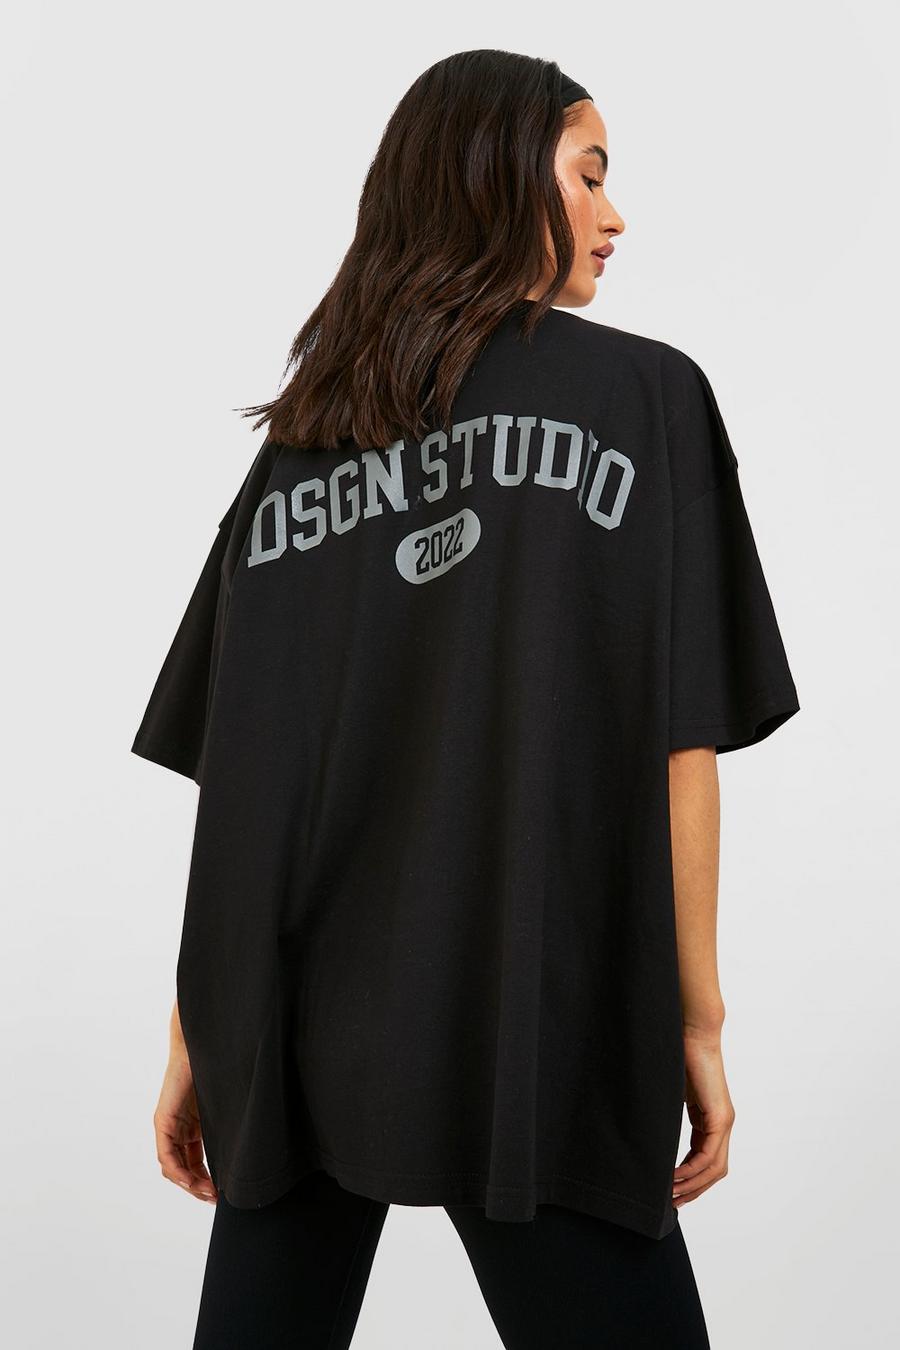 T-shirt oversize à slogan Dsgn Studio au dos, Black